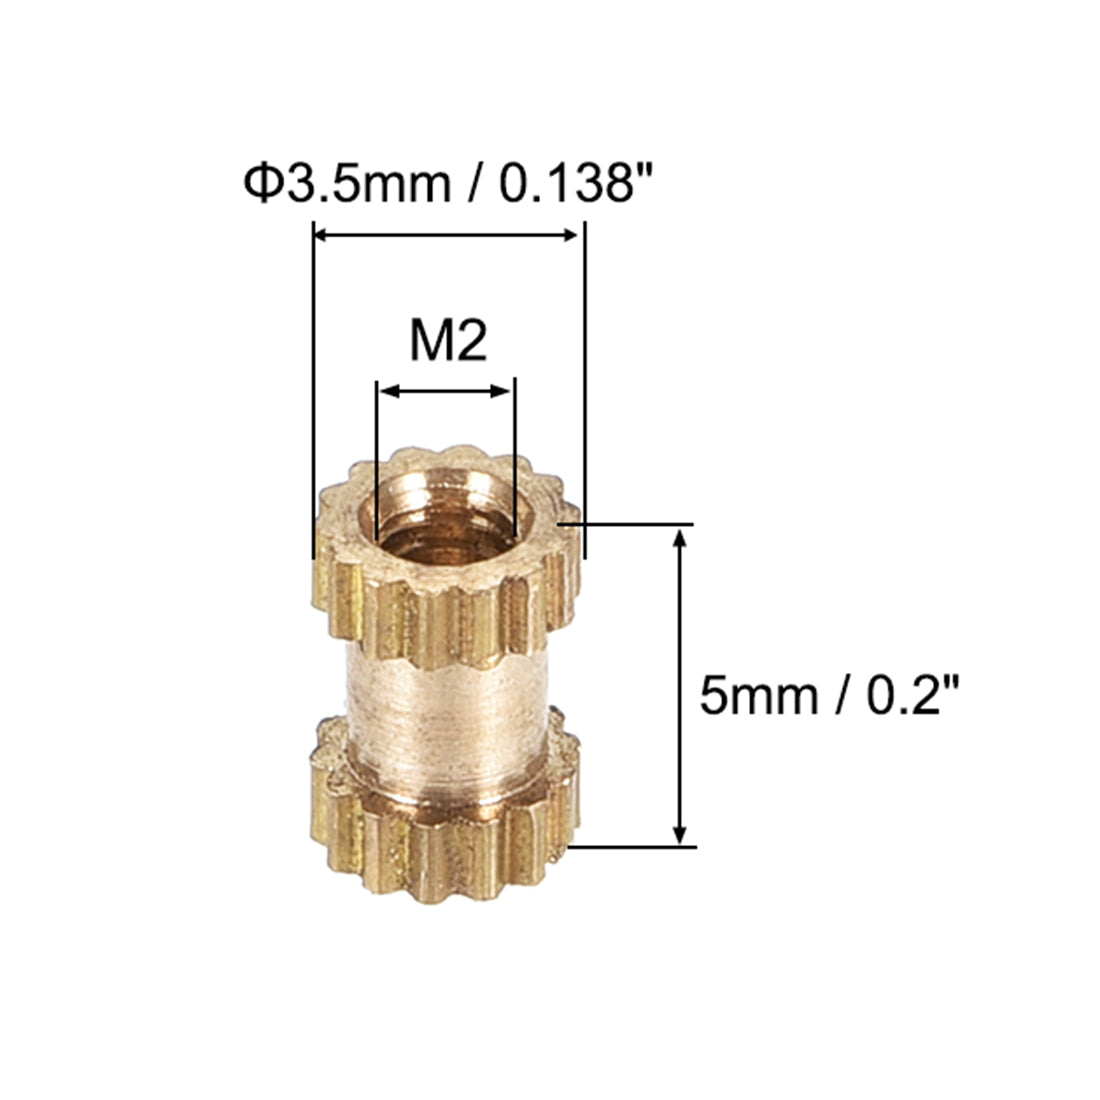 uxcell Uxcell Knurled Insert Nuts, M2 x 5mm(L) x 3.5mm(OD) Female Thread Brass Embedment Assortment Kit, 30 Pcs